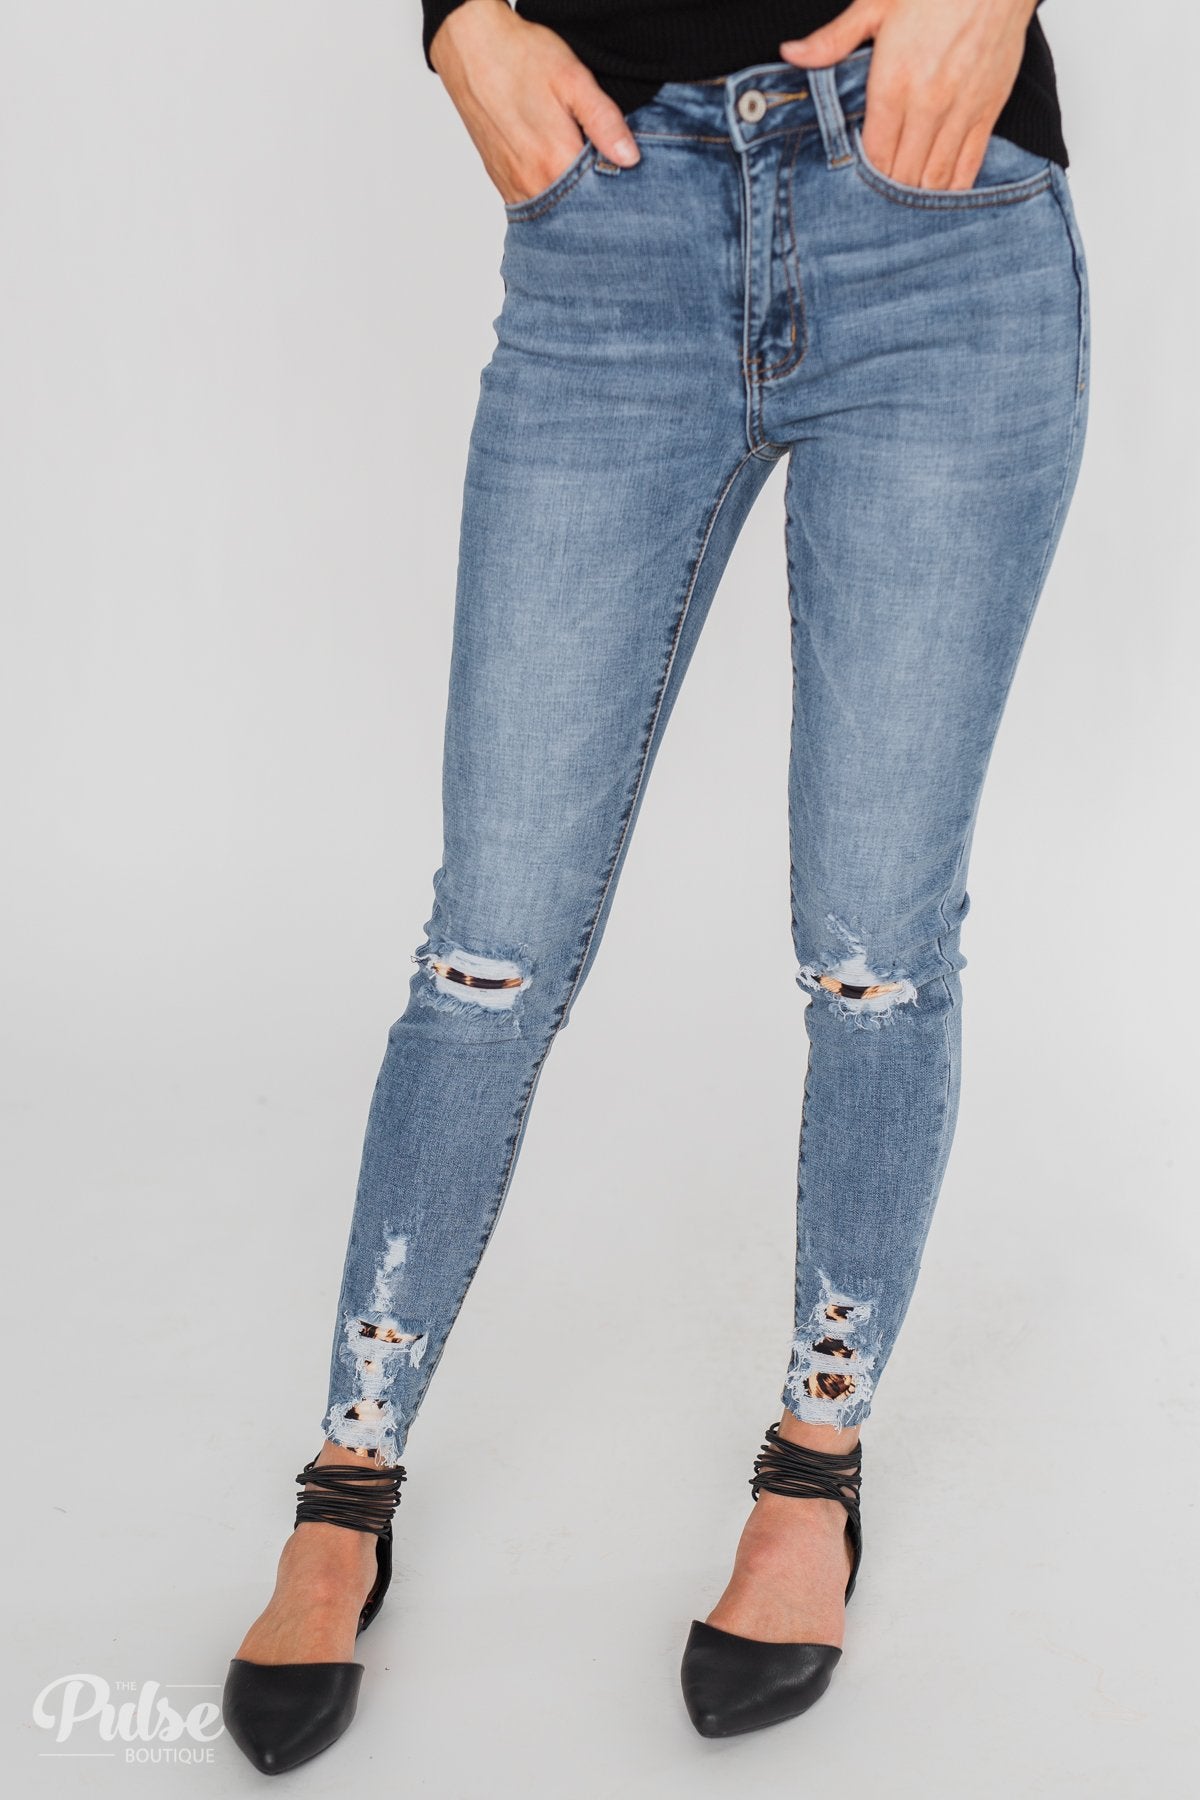 KanCan Jeans - Leopard Patch